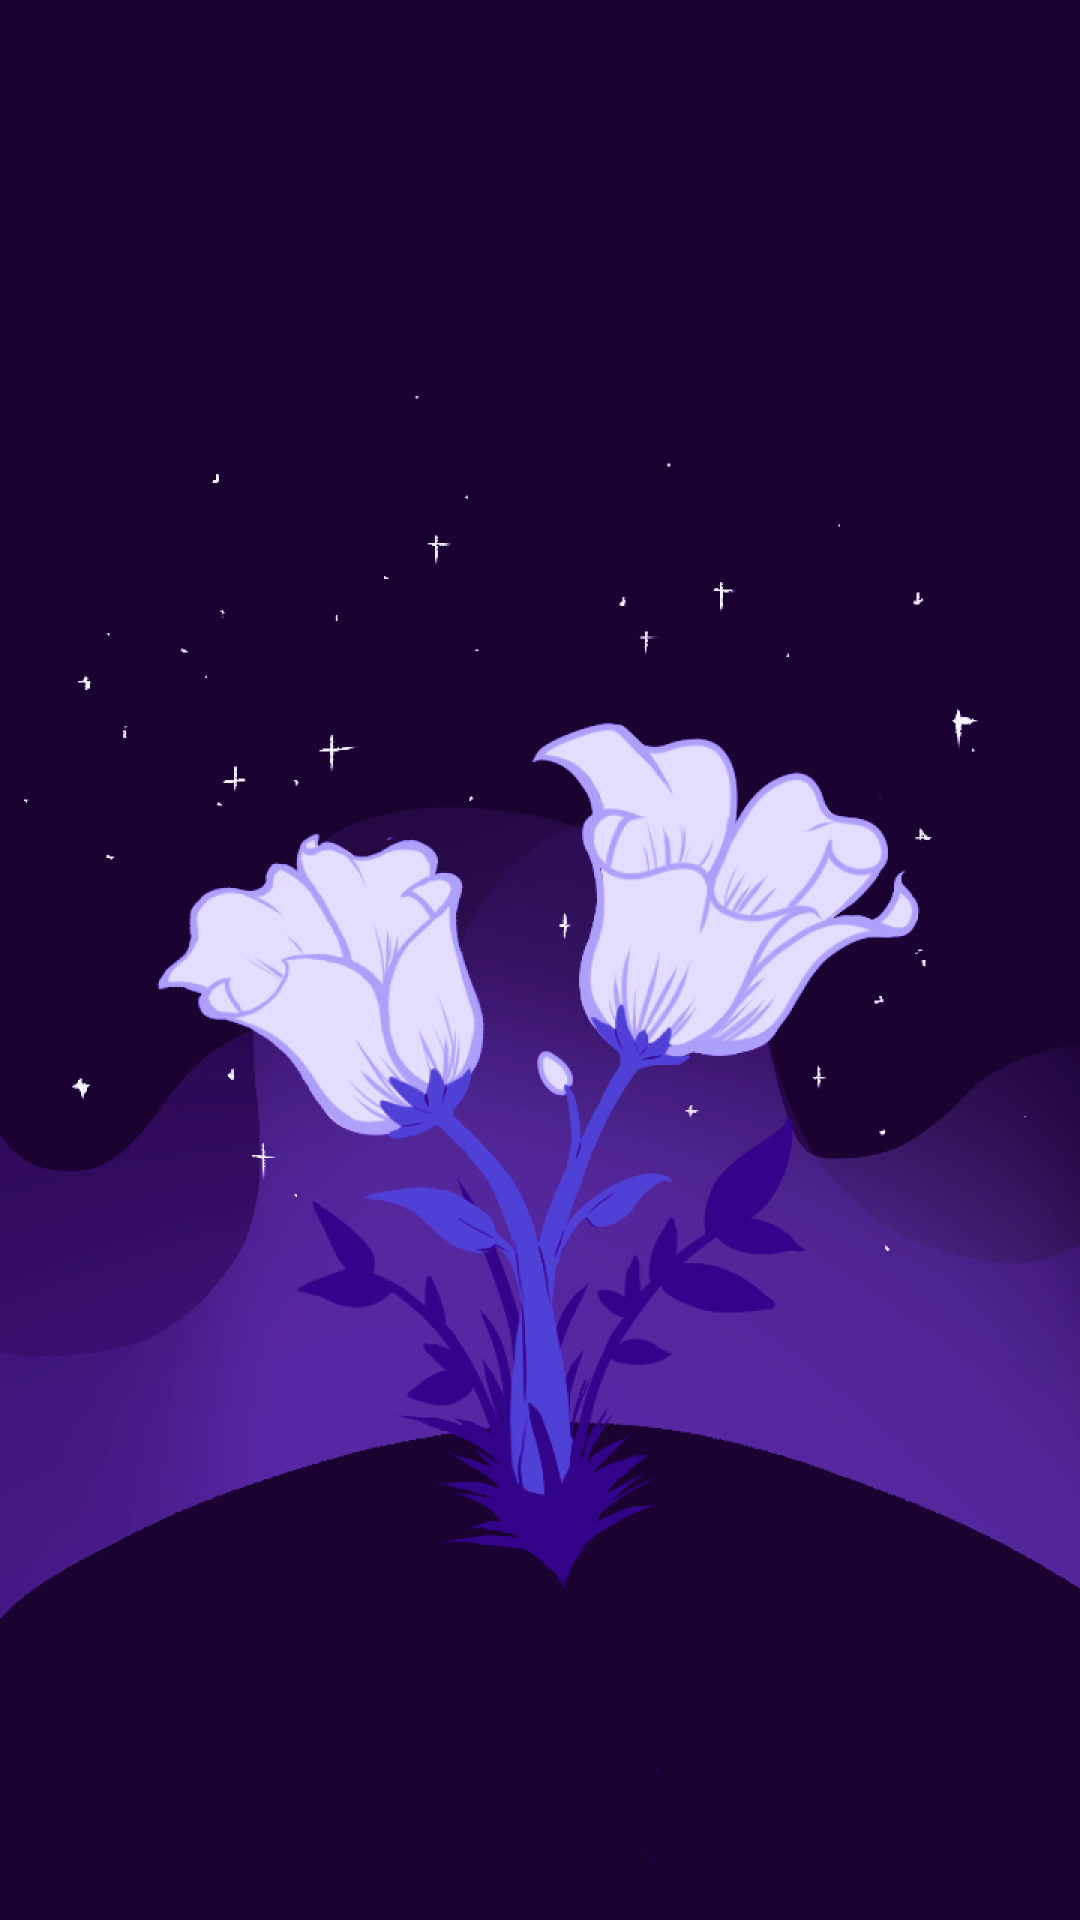 Illustration-Flowers